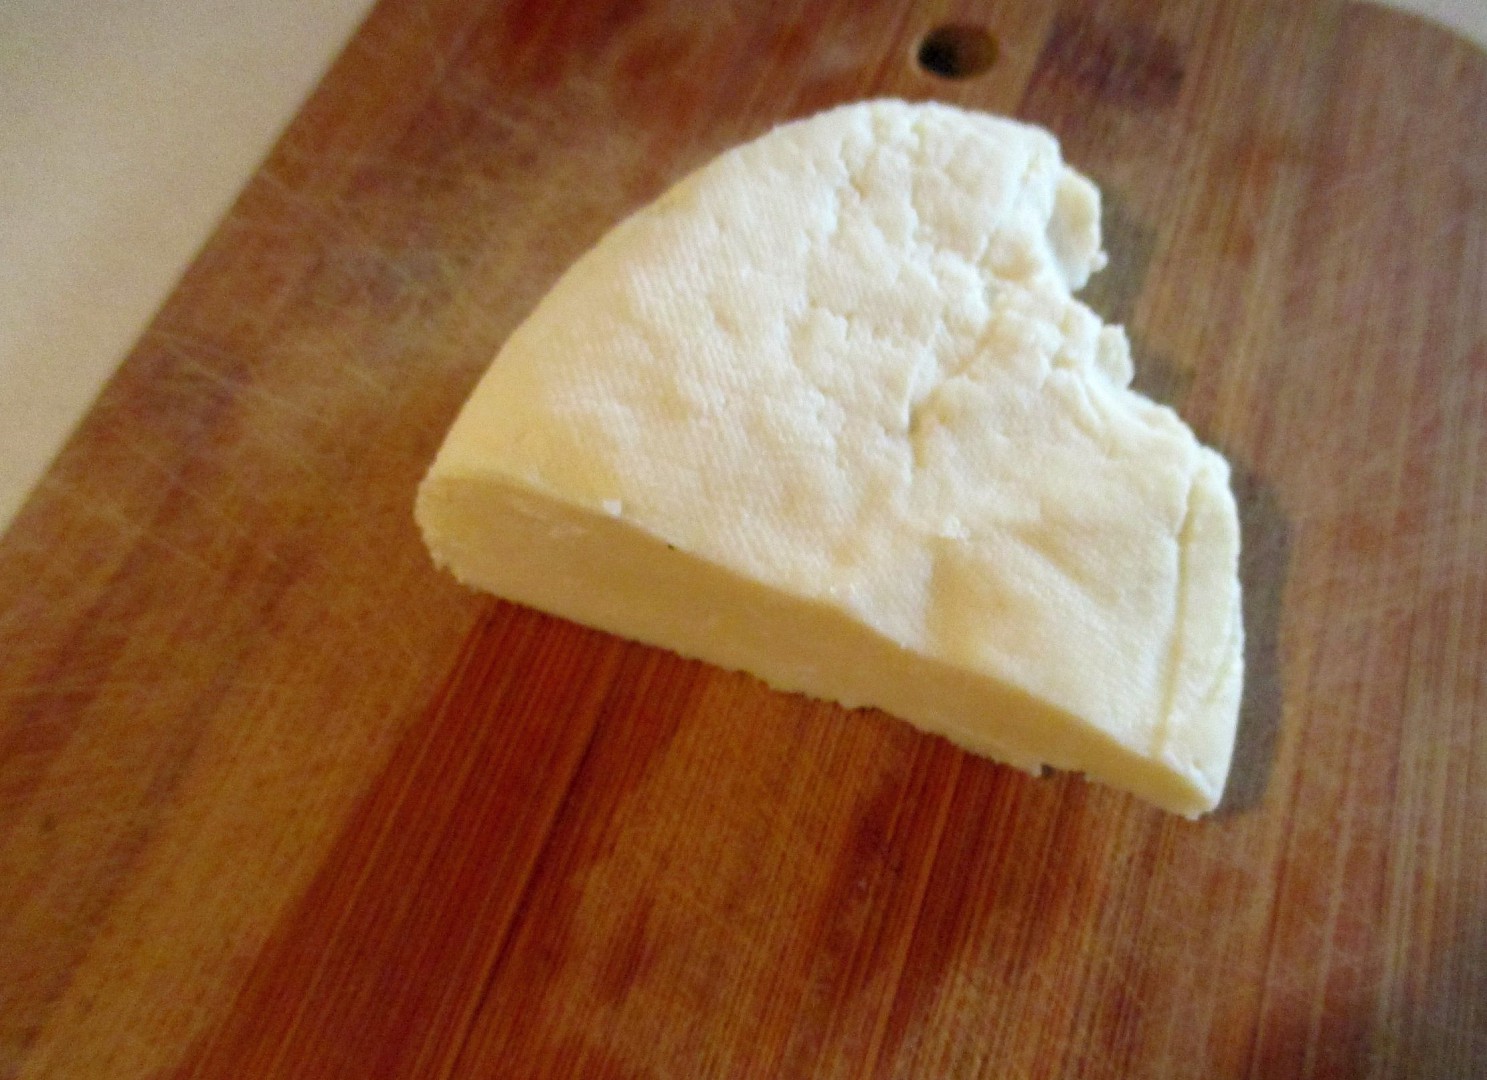 Panýr - domácí sýr